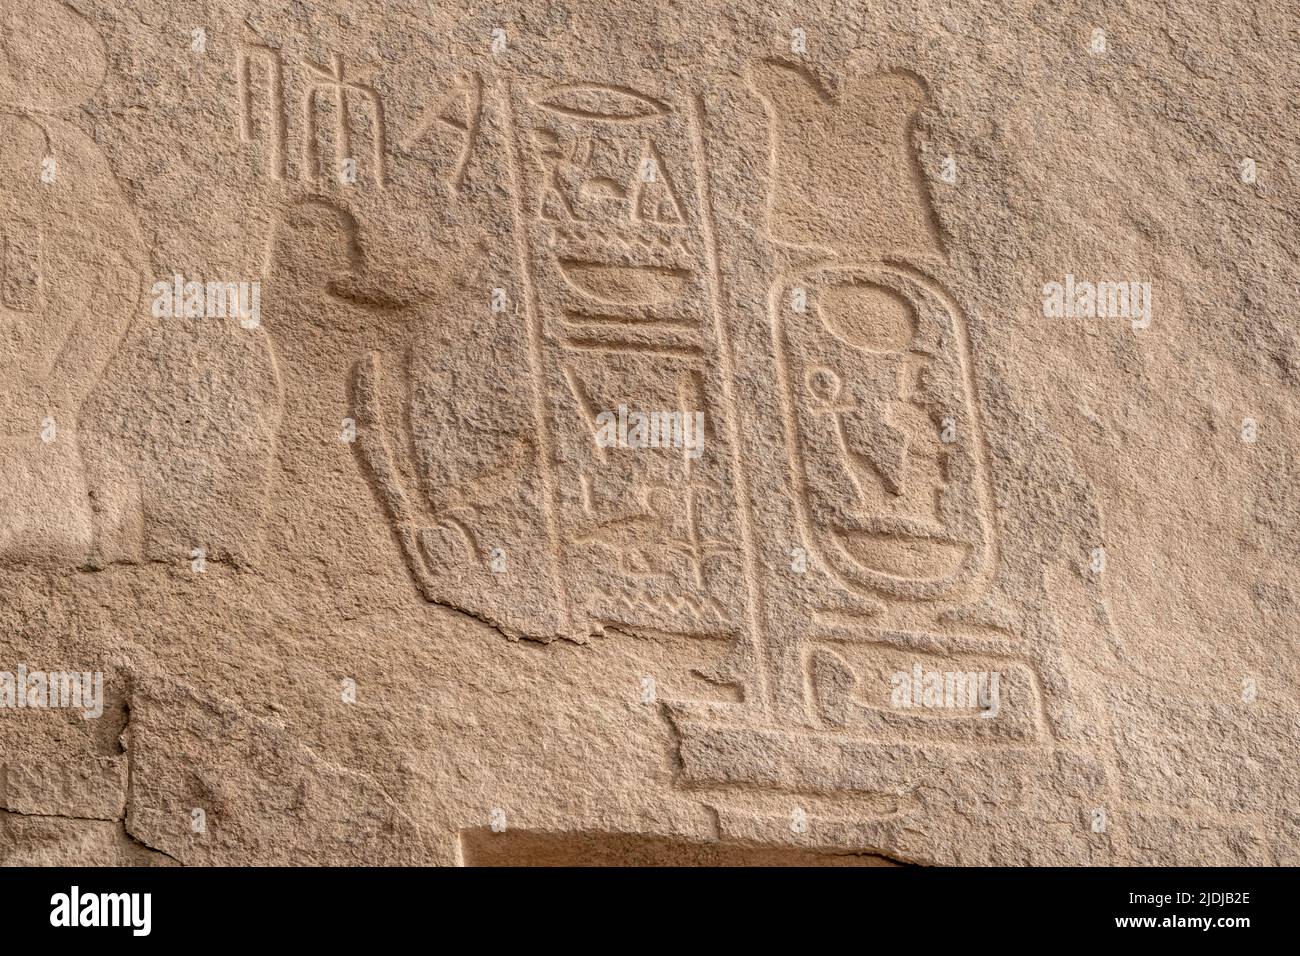 Inscripción de Amenhotep III en la roca de granito, río Nilo, Asuán Foto de stock